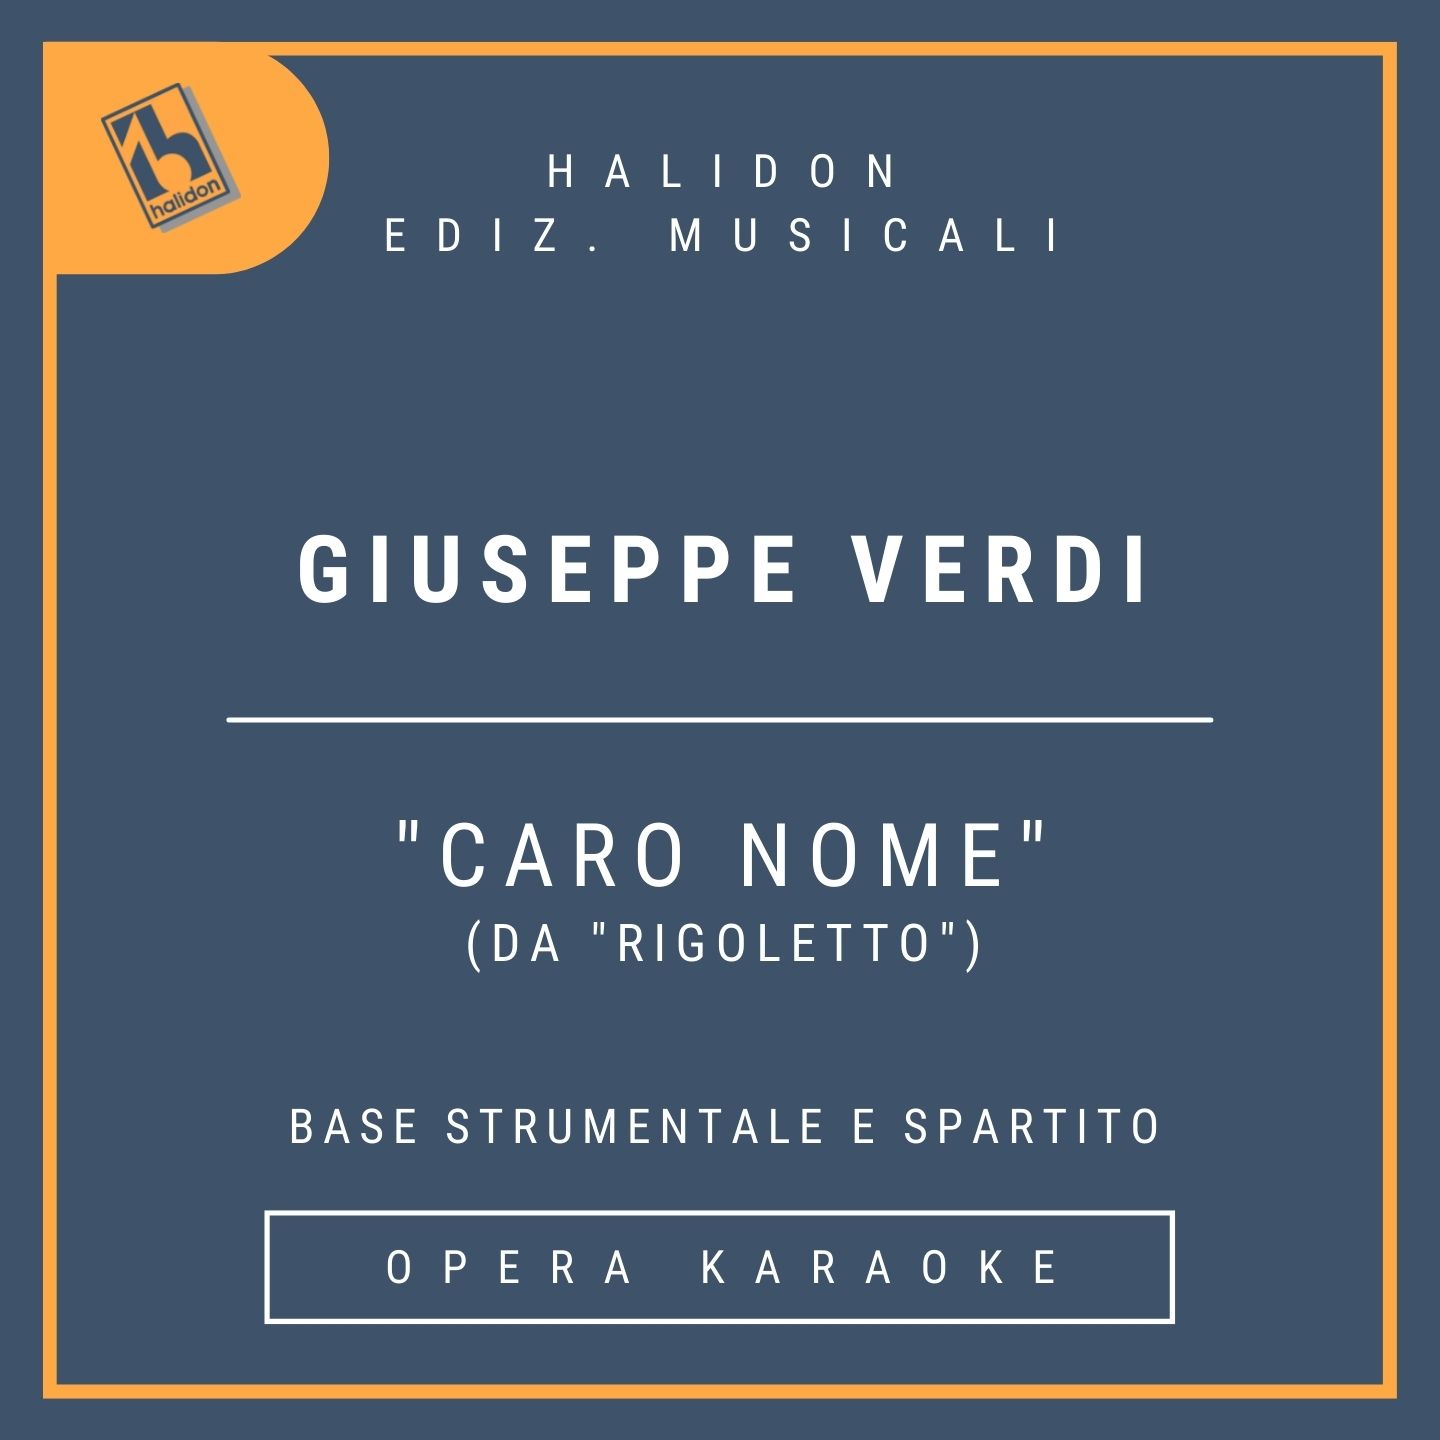 Giuseppe Verdi - Caro nome (from 'Rigoletto') - Gilda's Aria (coloratura soprano) - Instrumental track + sheet